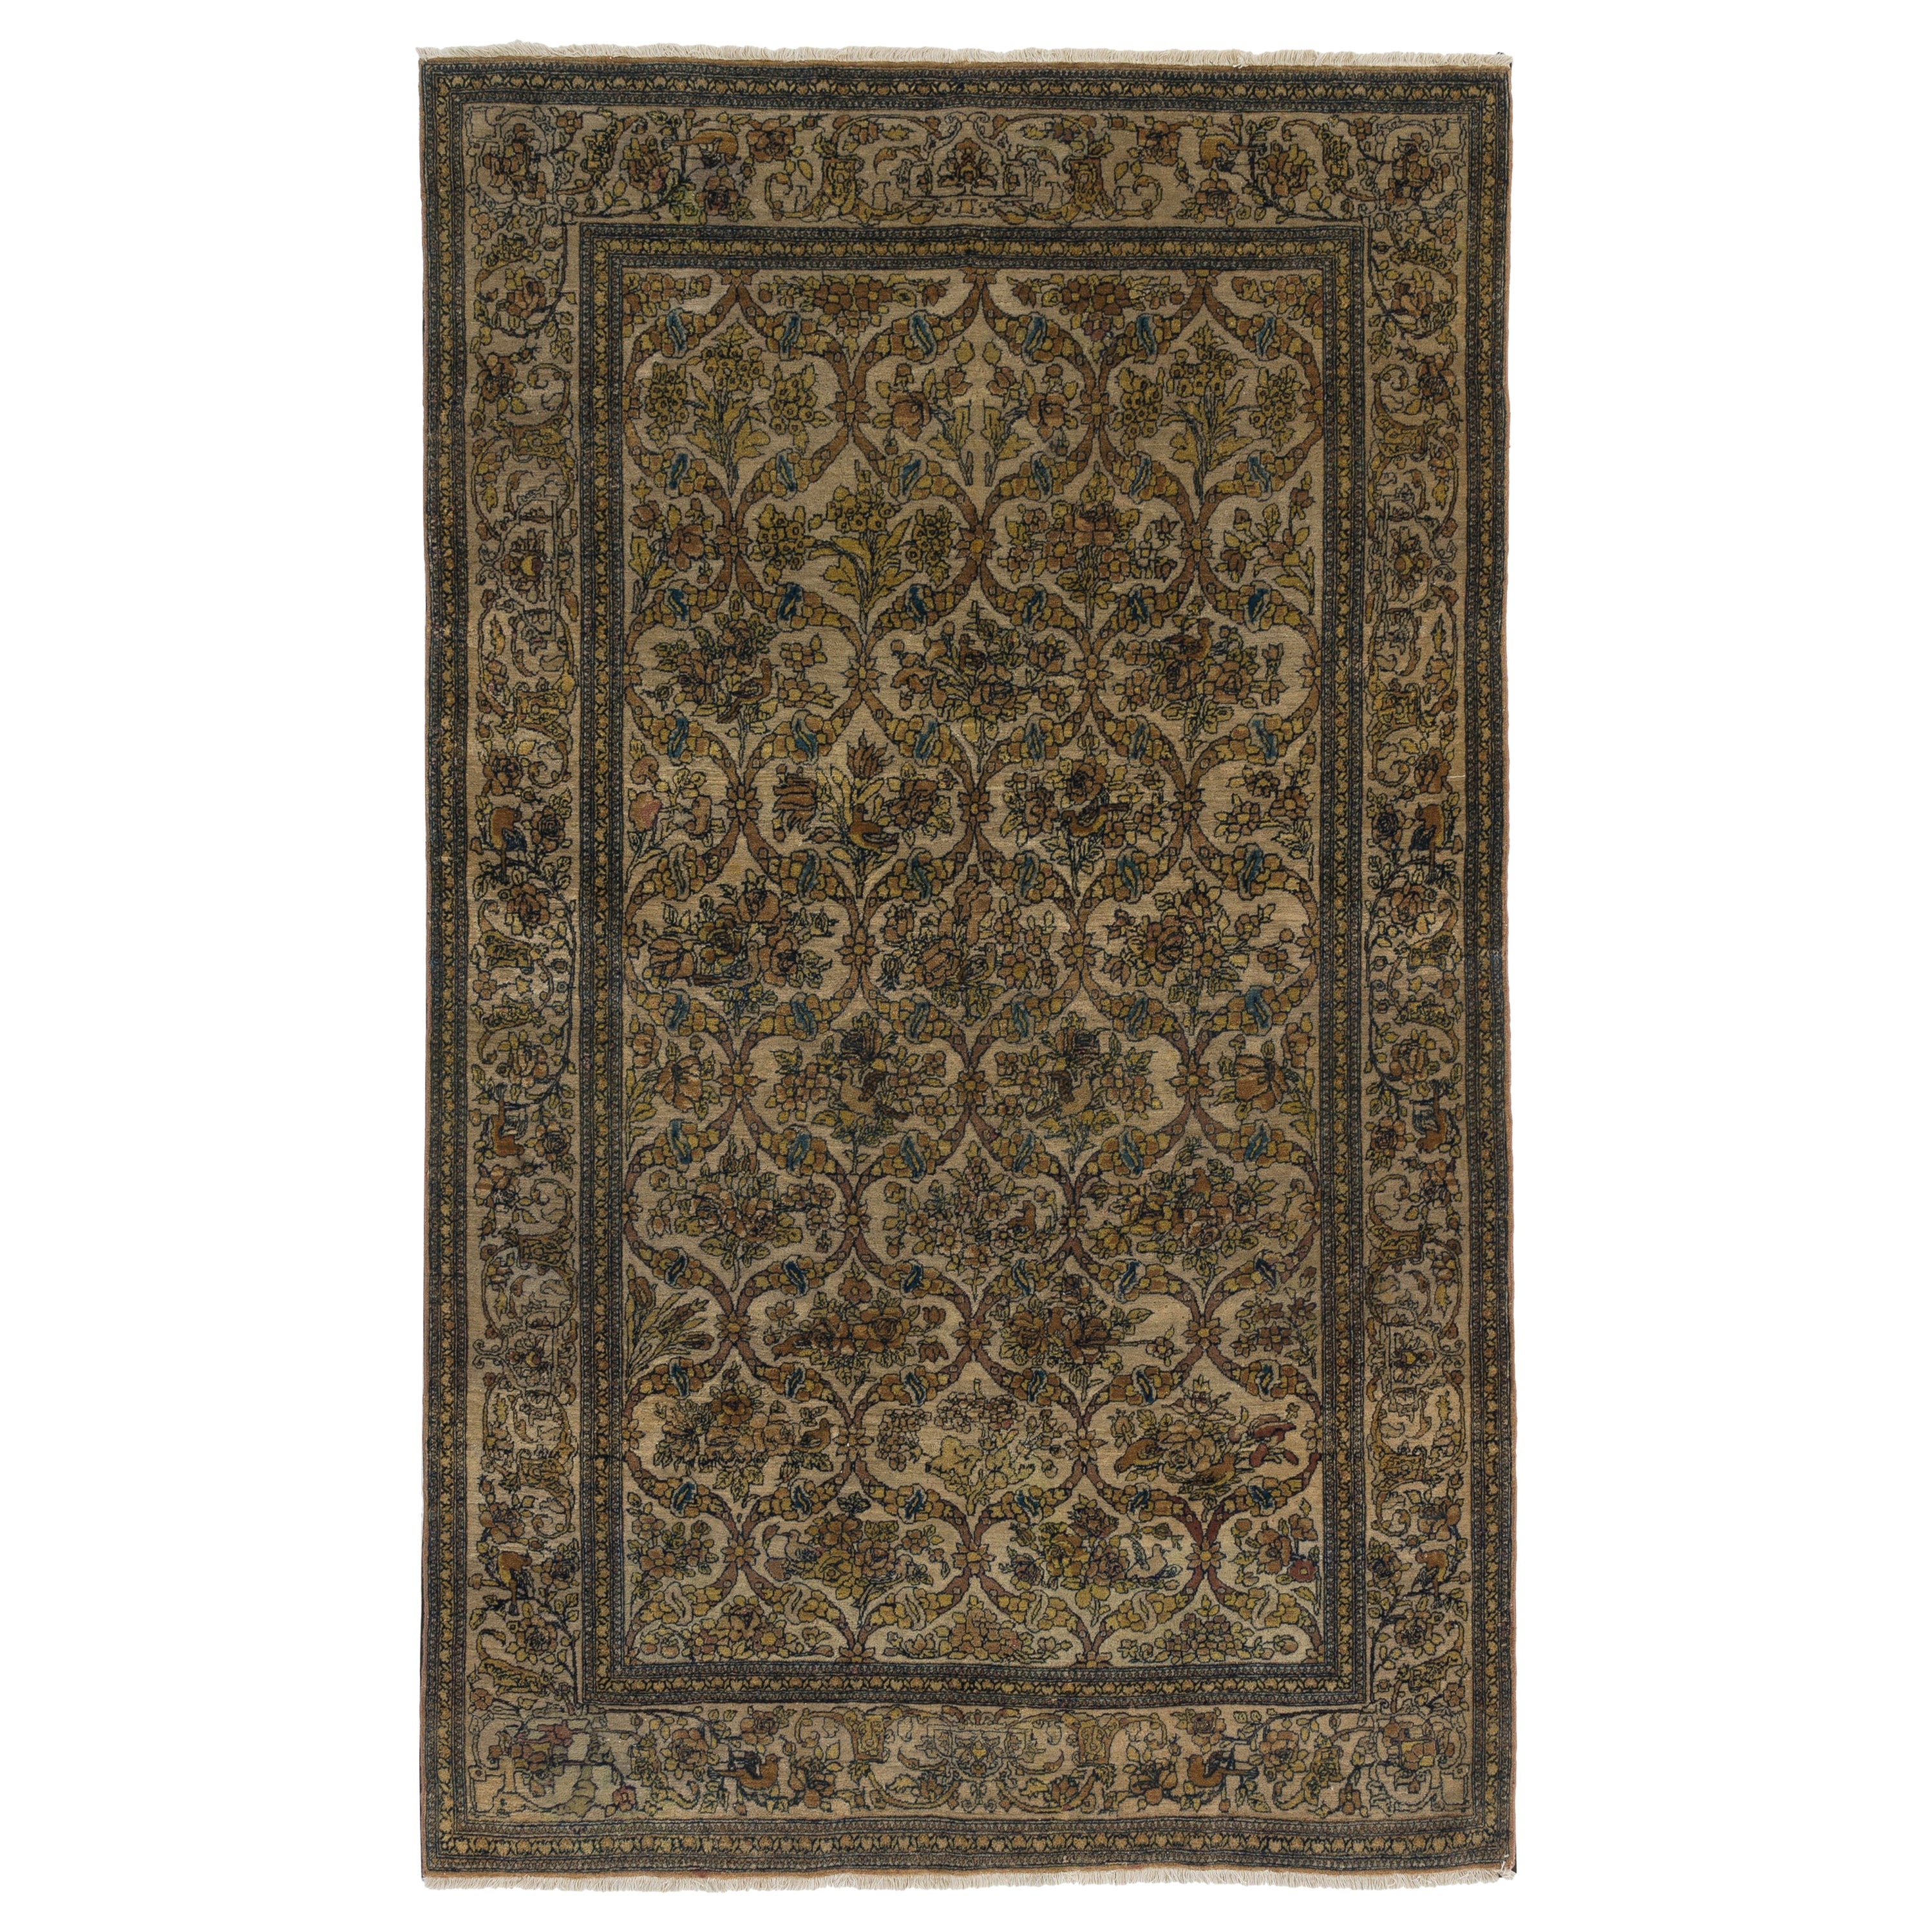 Antiker handgeknüpfter türkischer Teppich, 4.4x7.7 Ft, um 1920